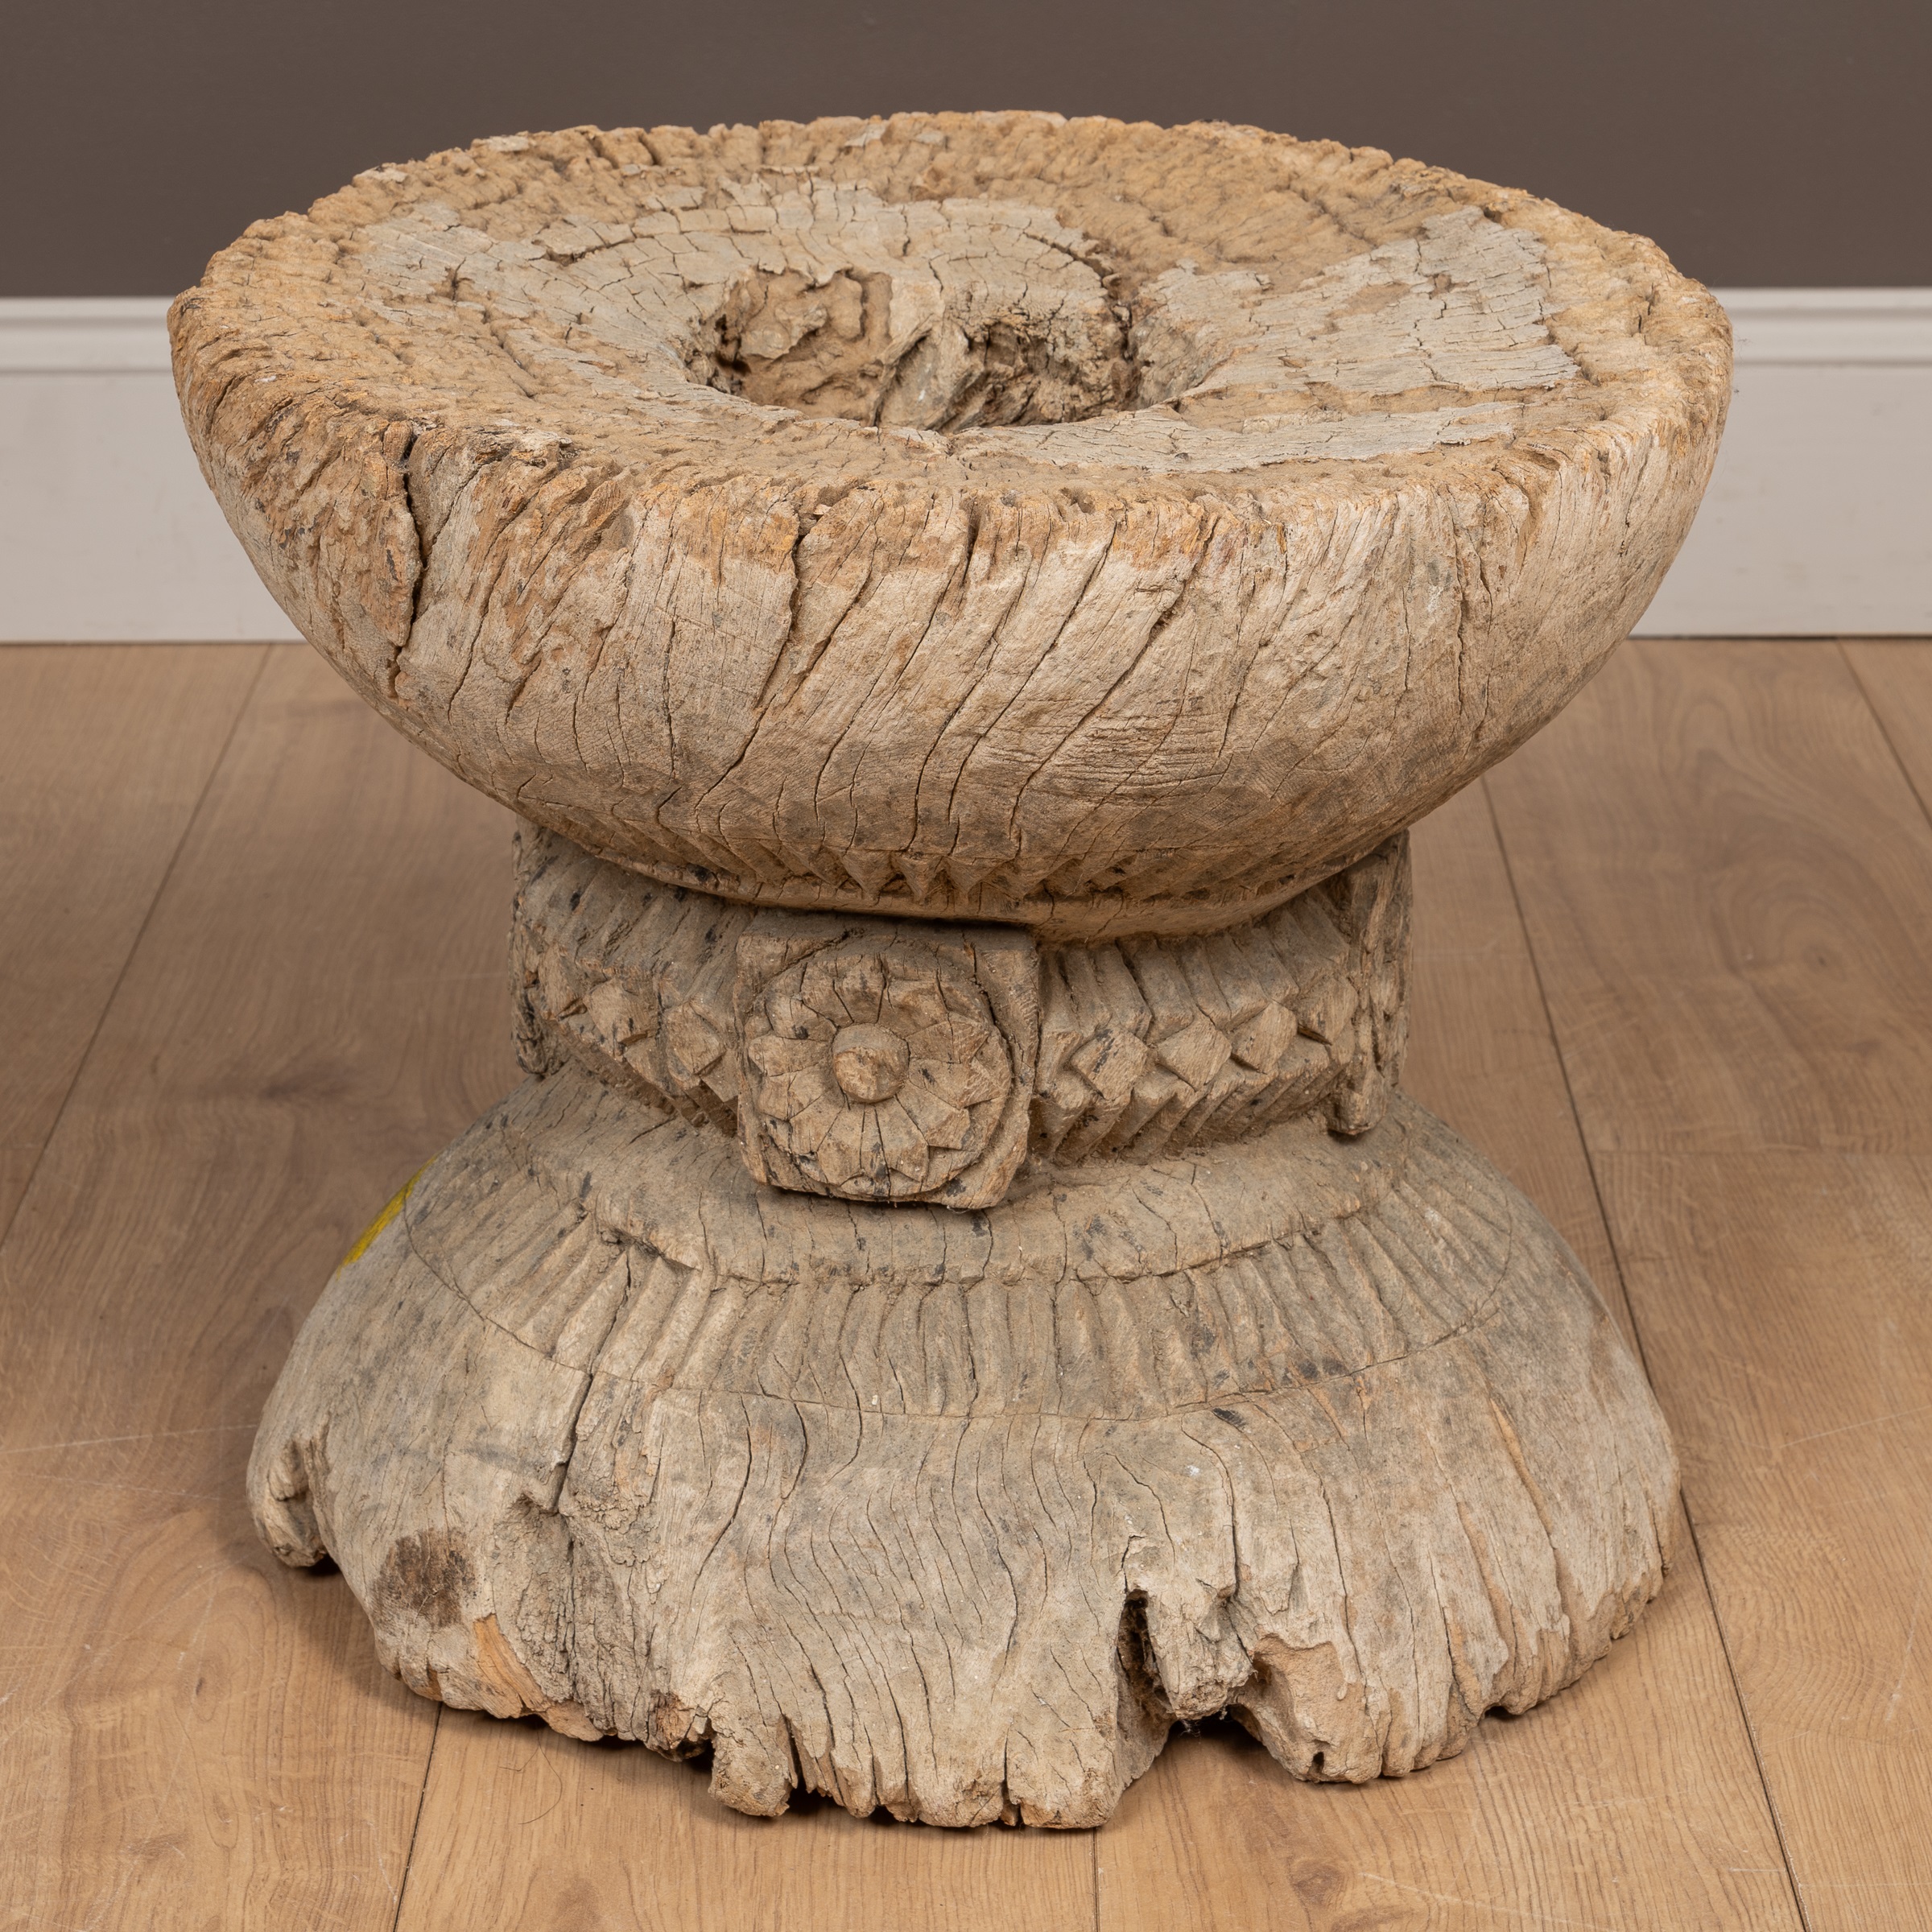 An Indian hardwood stool